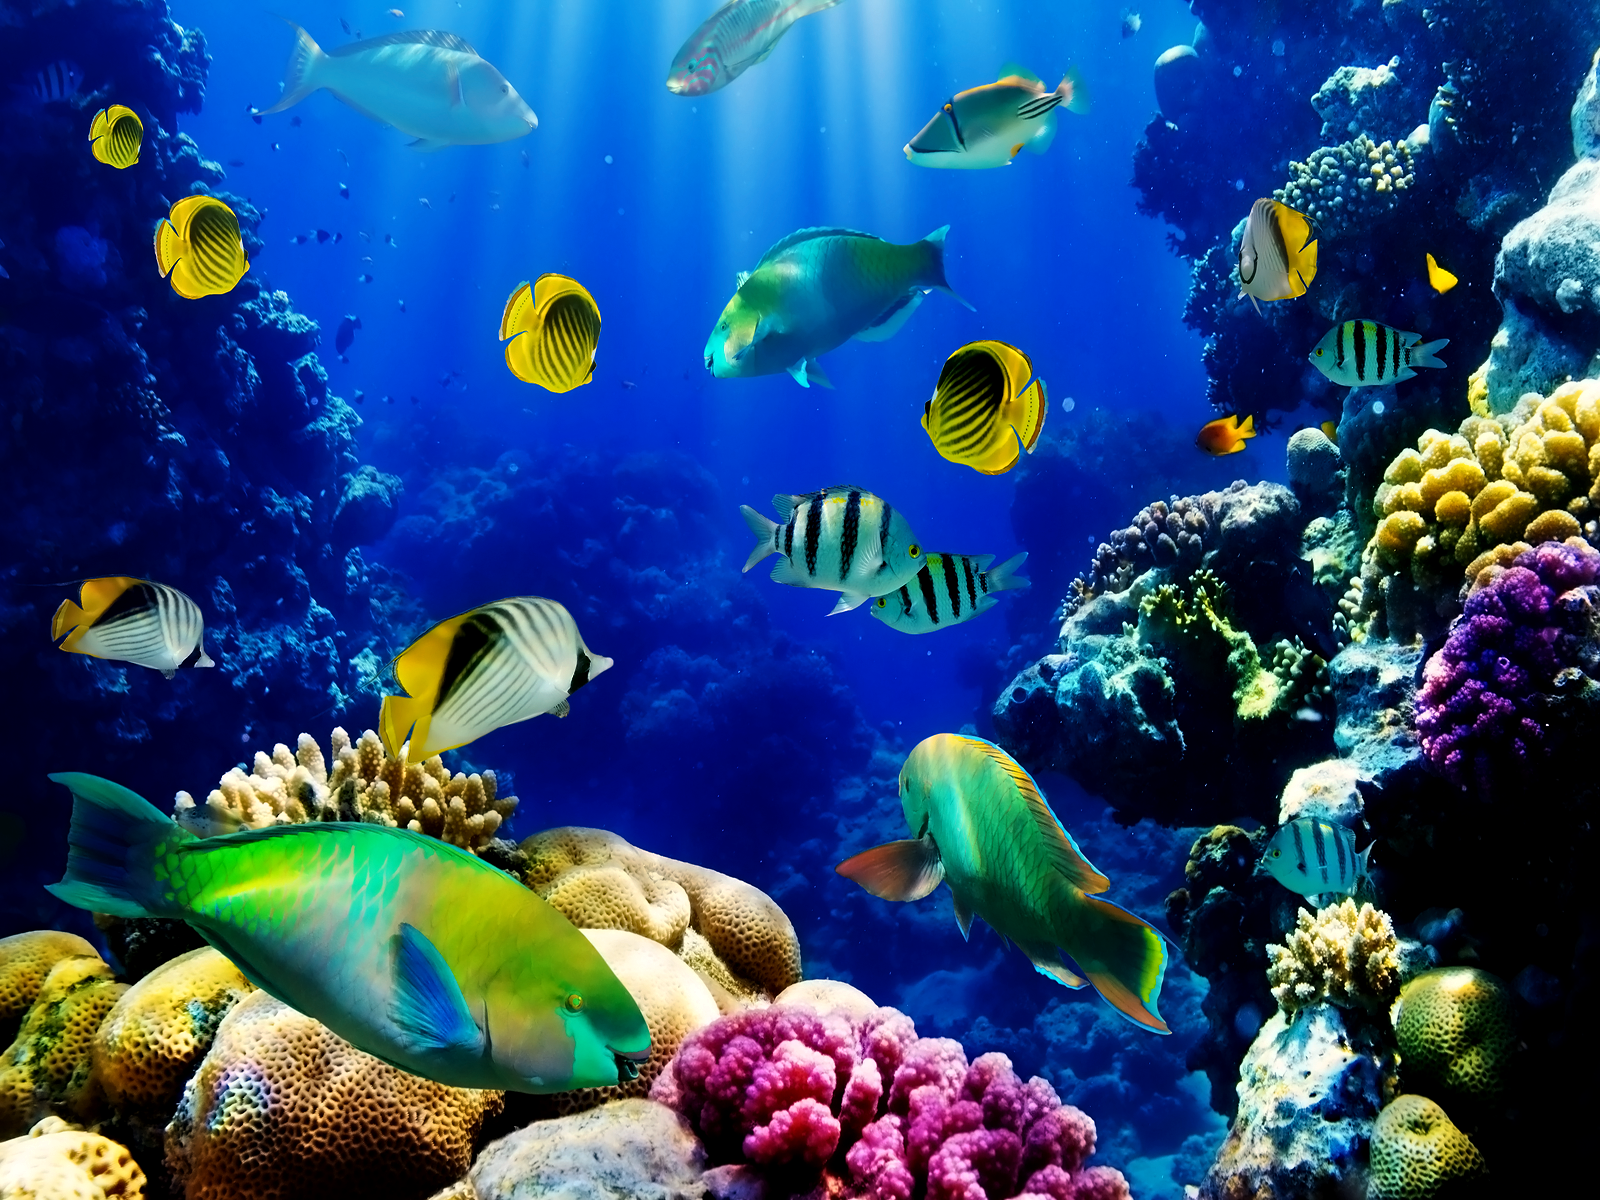 Aquarium Live Wallpaper for PC - WallpaperSafari